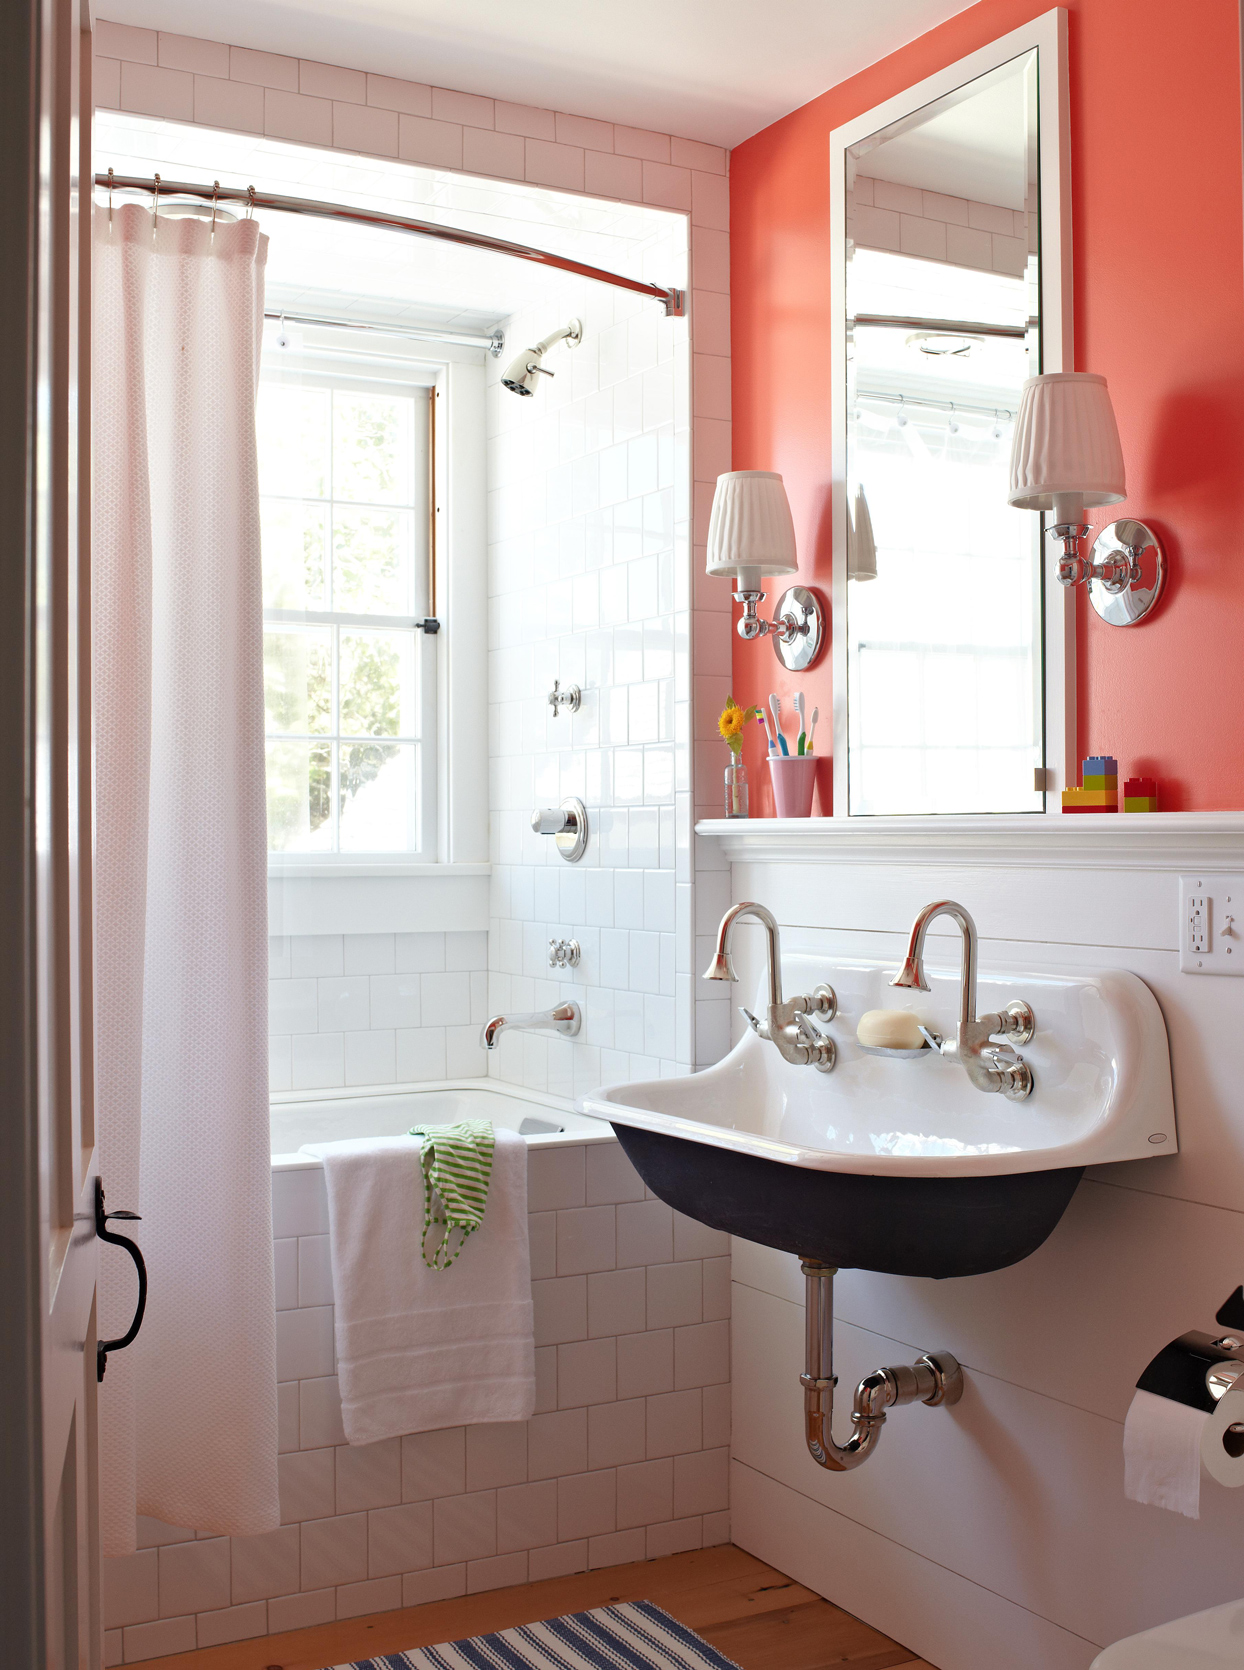 Красная акцентная стена в дизайне ванной комнаты